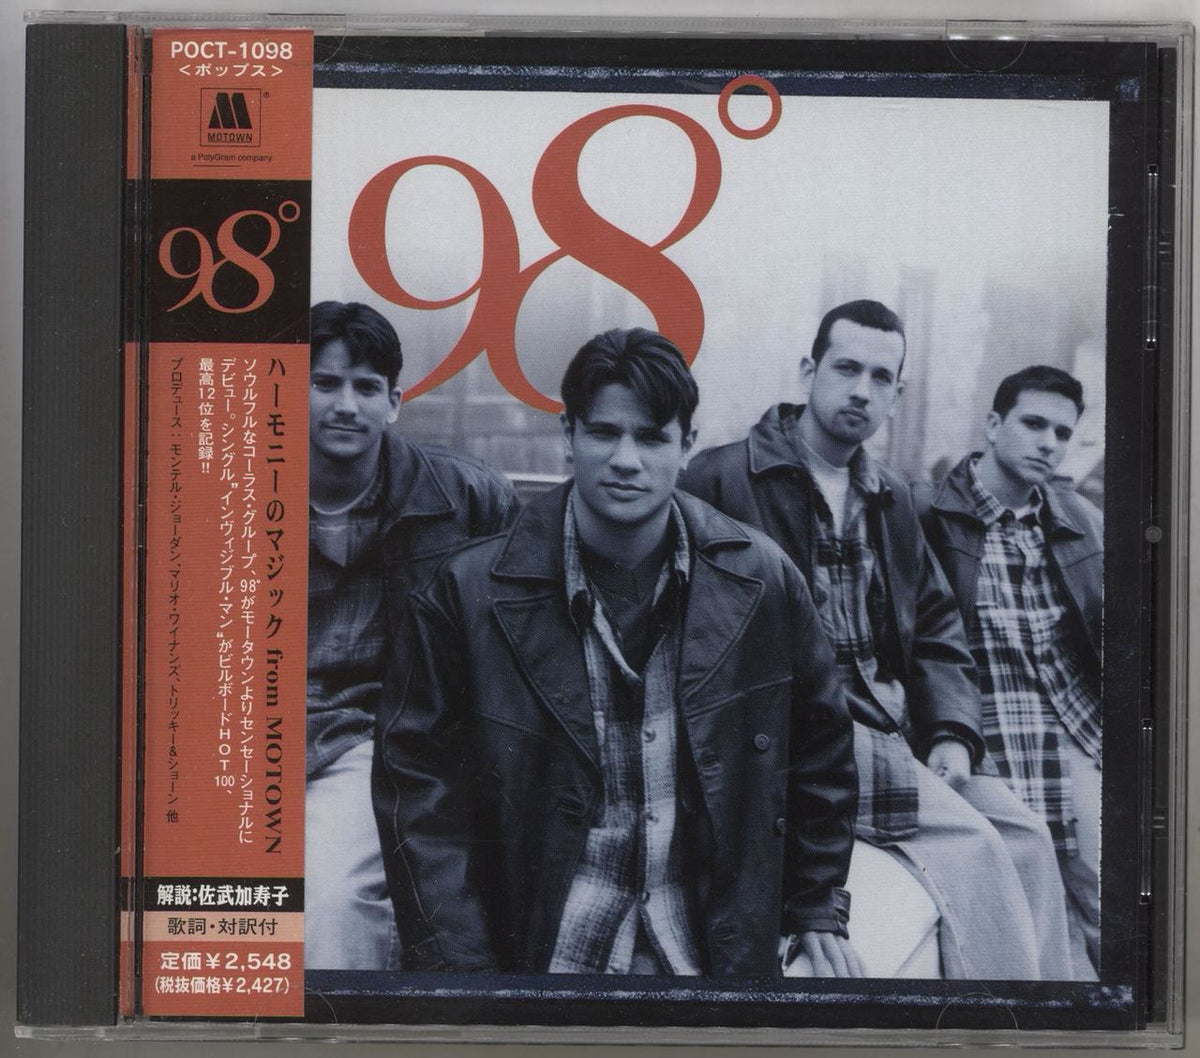 98 Degrees 98 Degrees - Promo + Obi Japanese Promo CD album